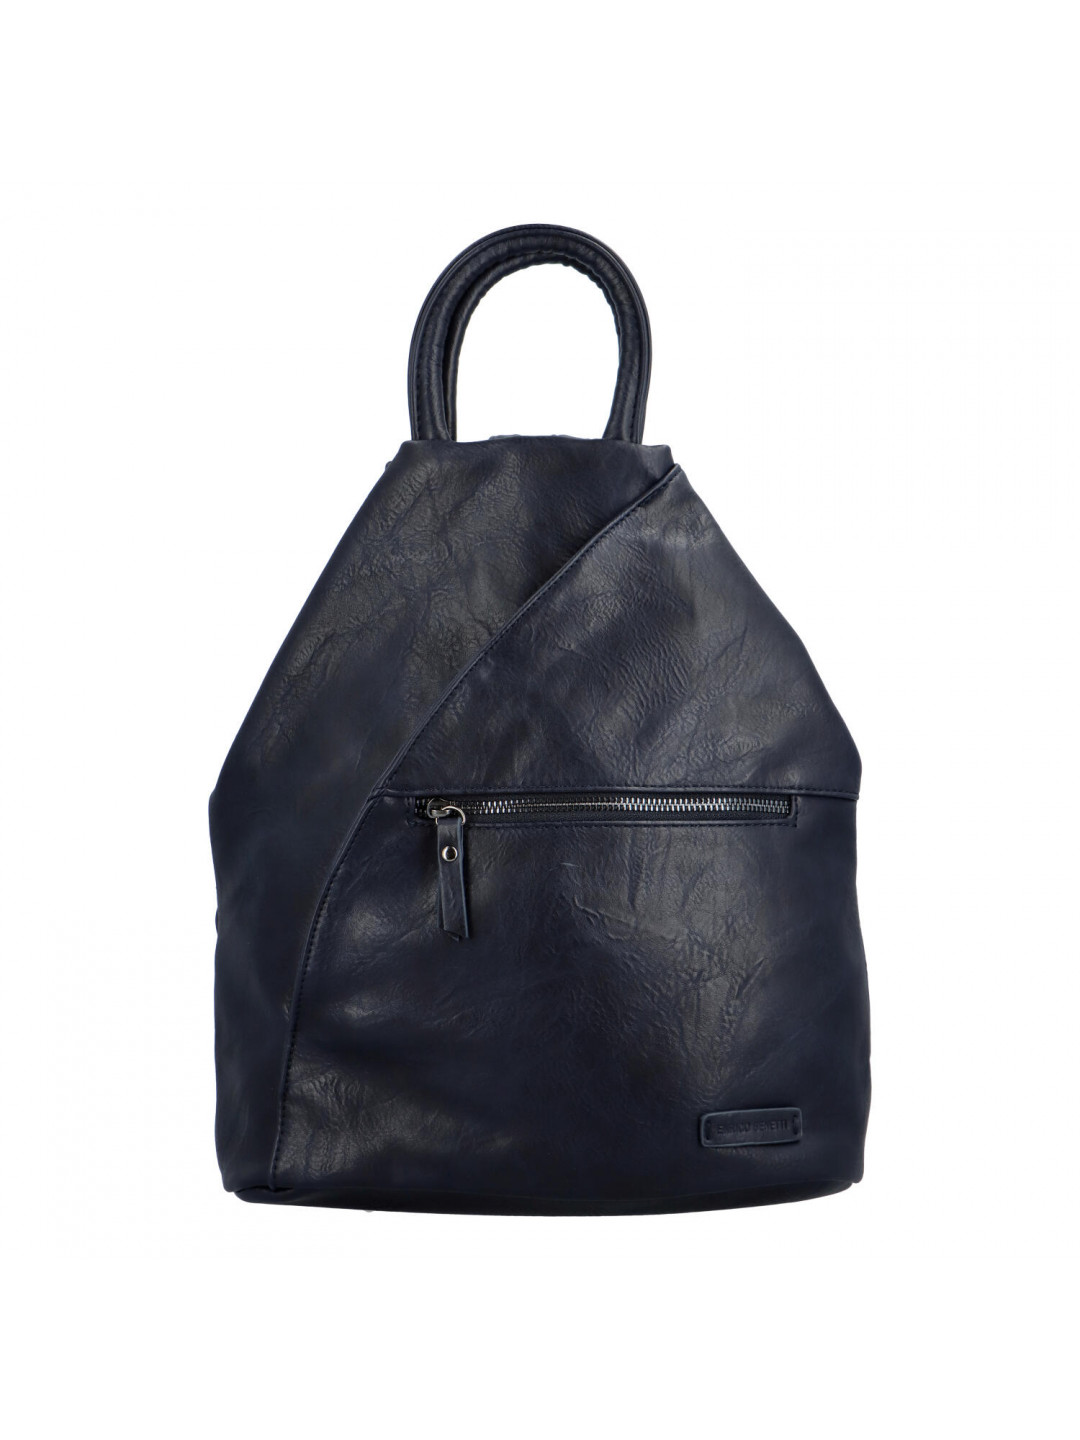 Originální dámský batoh kabelka tmavě modrý – Enrico Benetti Fabio